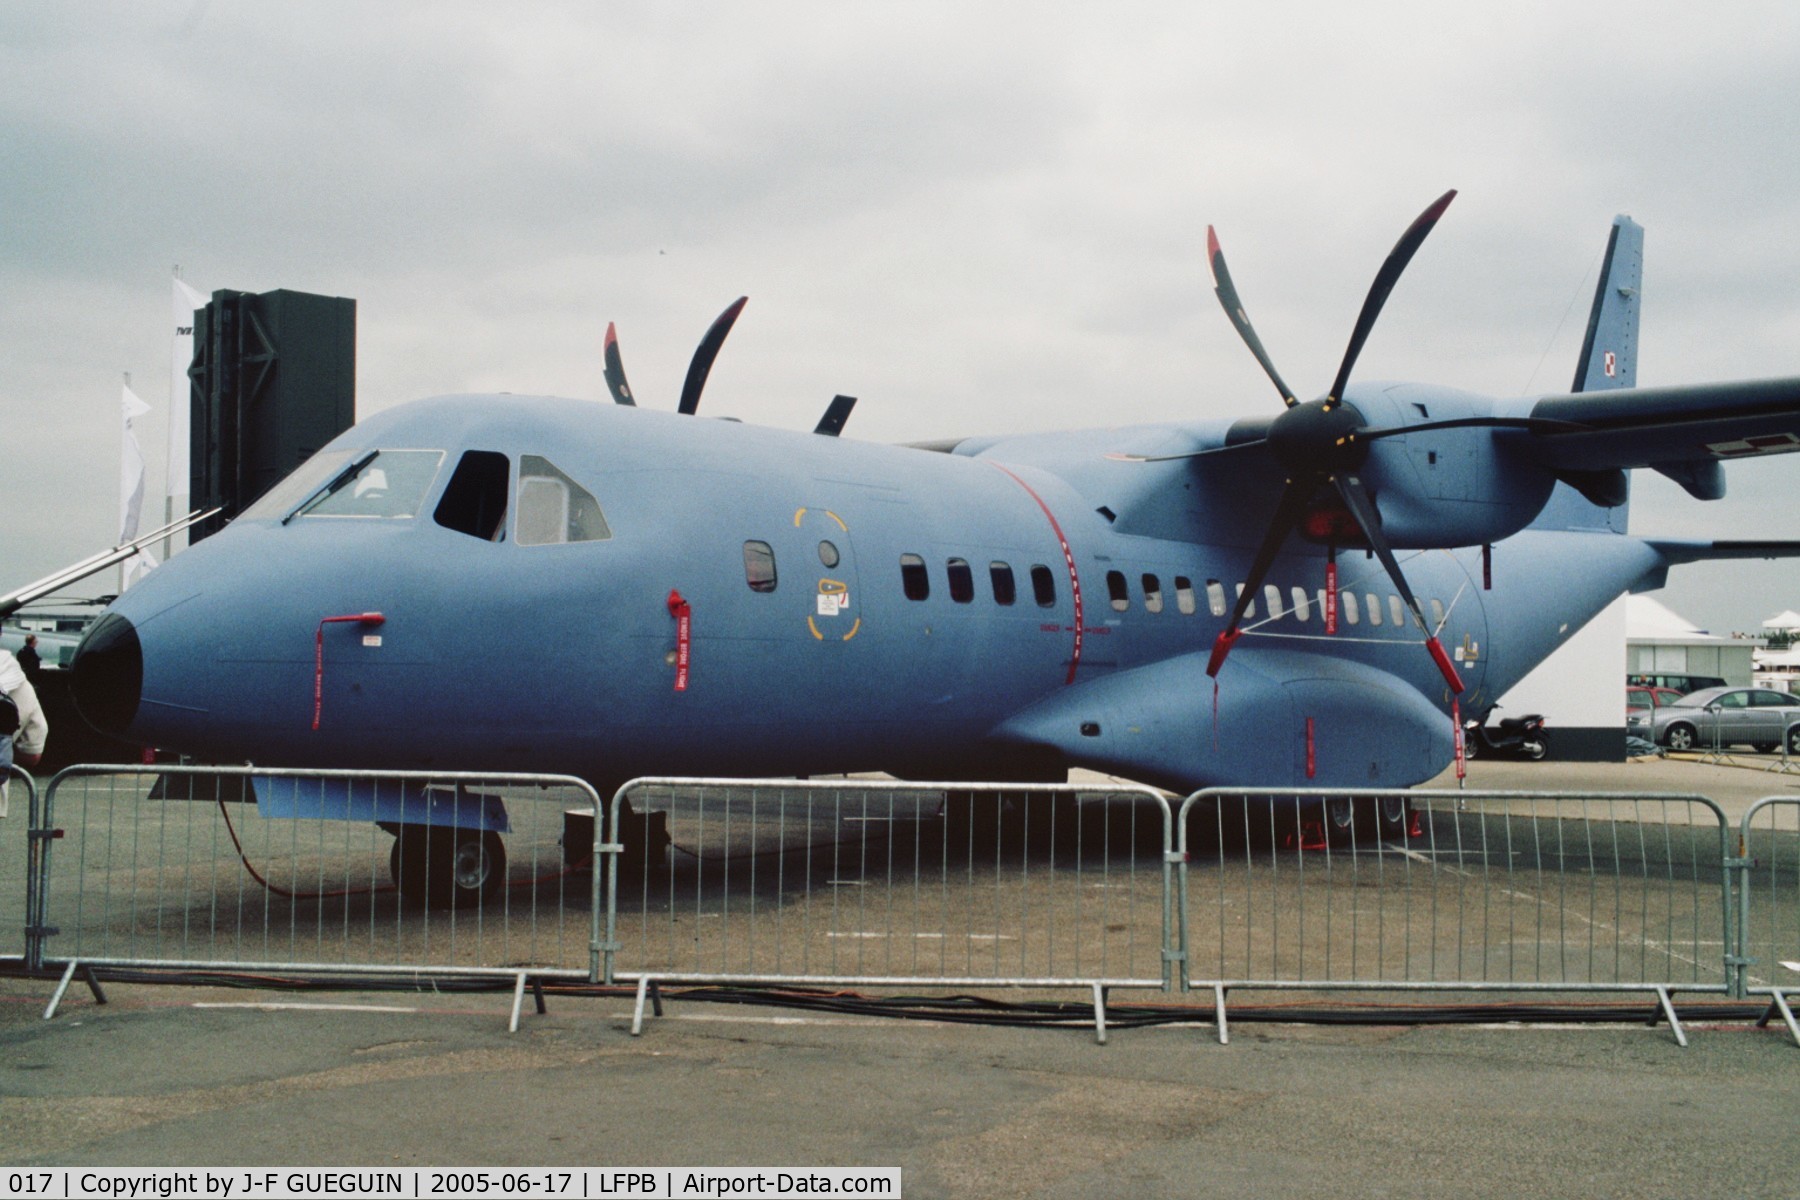 017, CASA C-295M C/N S-017, On display at Paris-Le Bourget 2005 airshow.